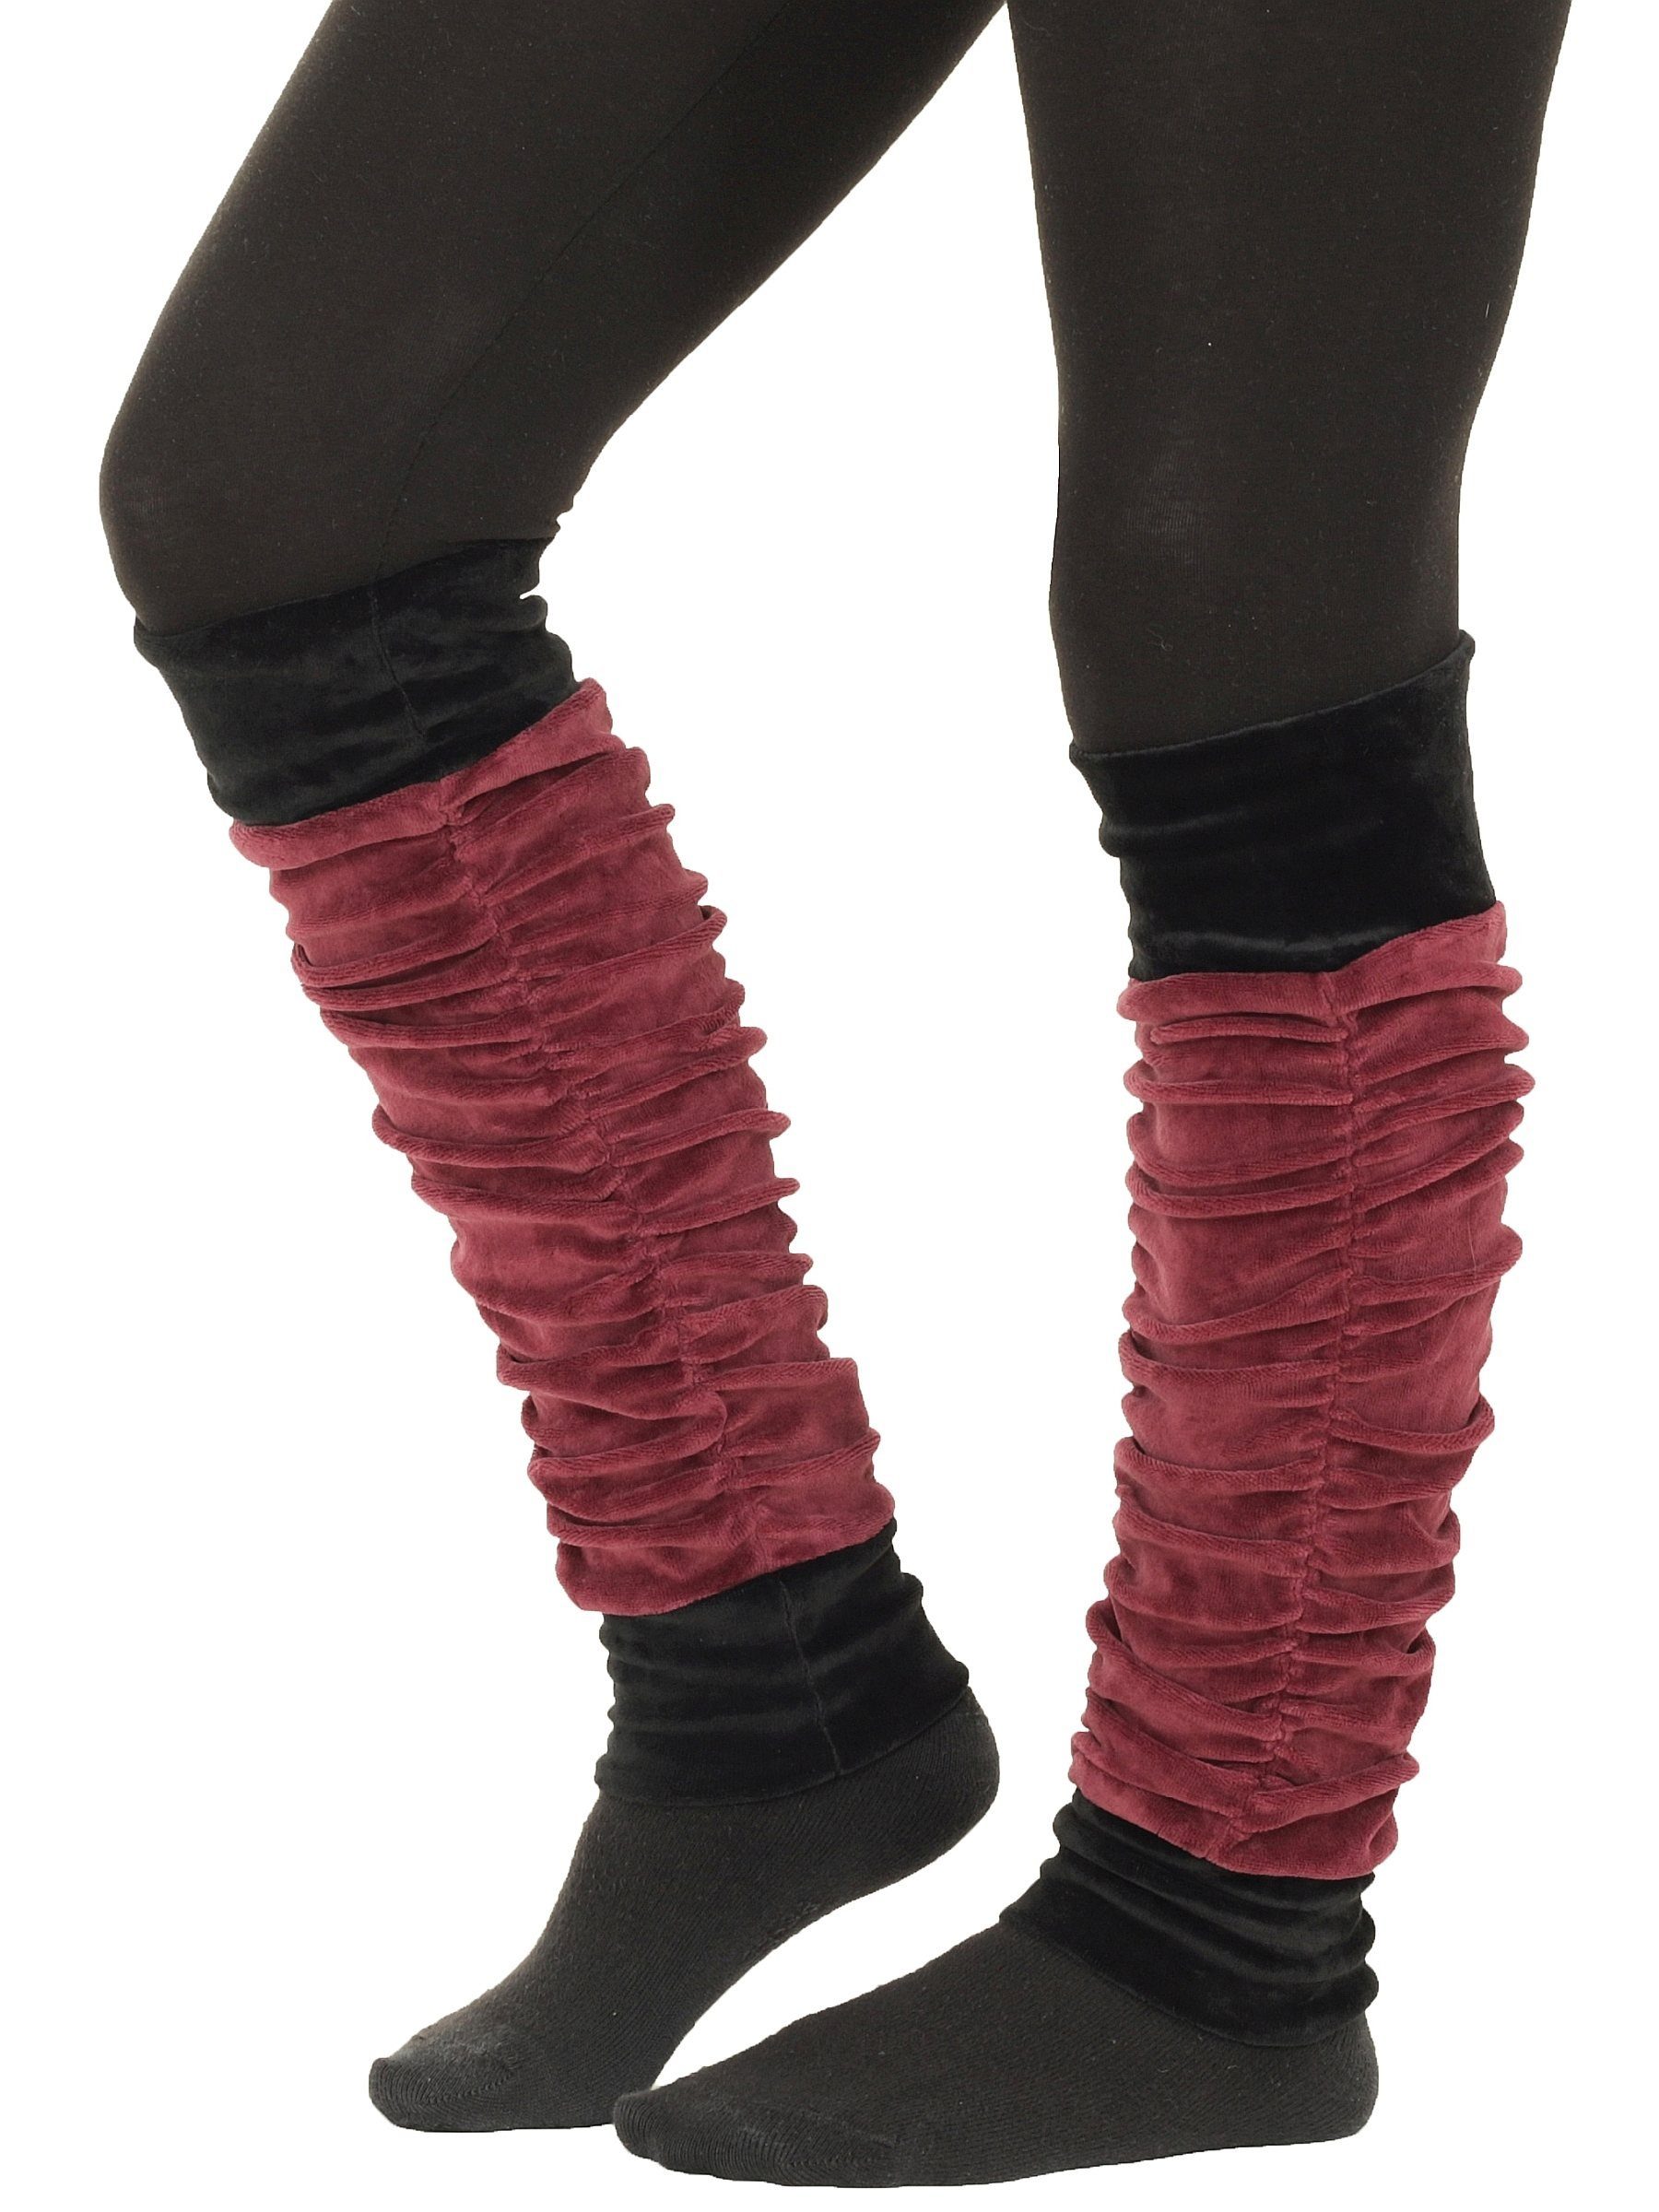 PUREWONDER Beinstulpen Stulpen aus Samt zweifarbig lw25 (1 Paar) Einheitsgröße Rot | Beinstulpen